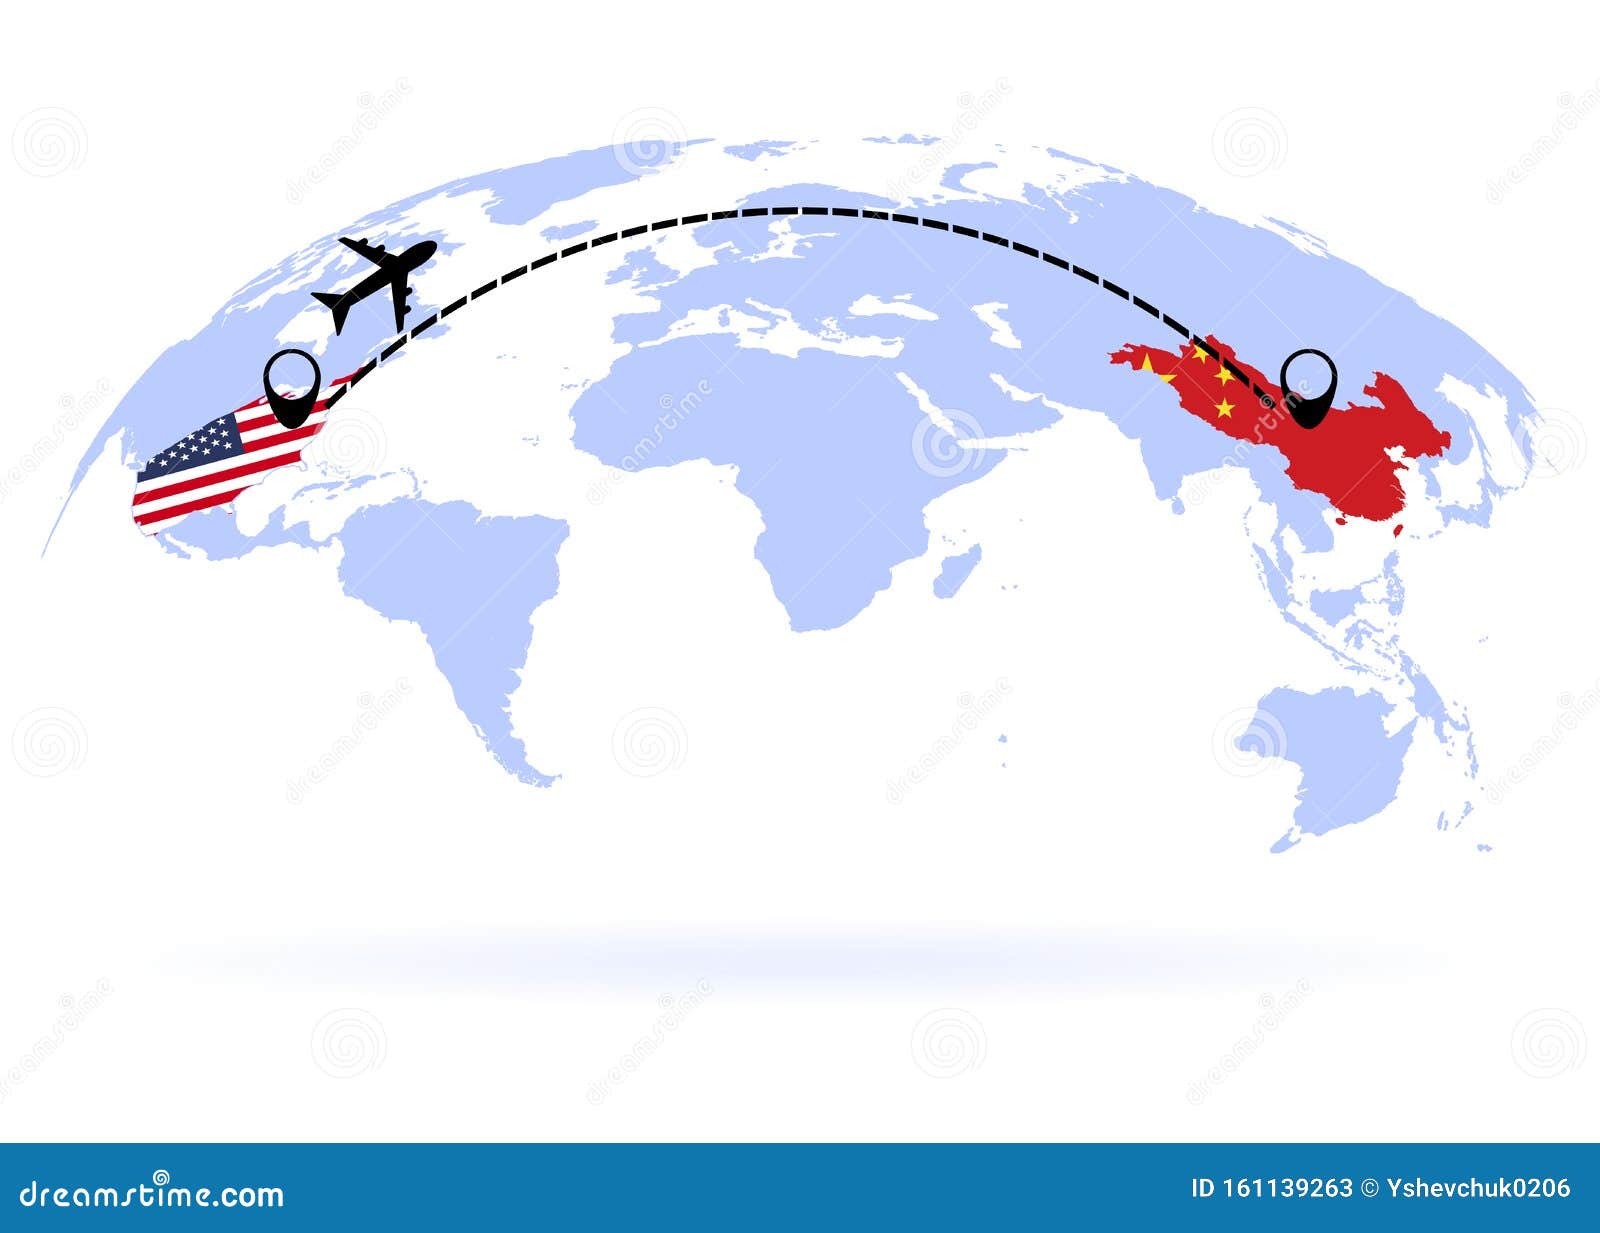 На китайском полетит. Маршрут самолета вектор. Маршрут самолета из США В Китай. Карта самолетов. Путь перелета из США В Китай.